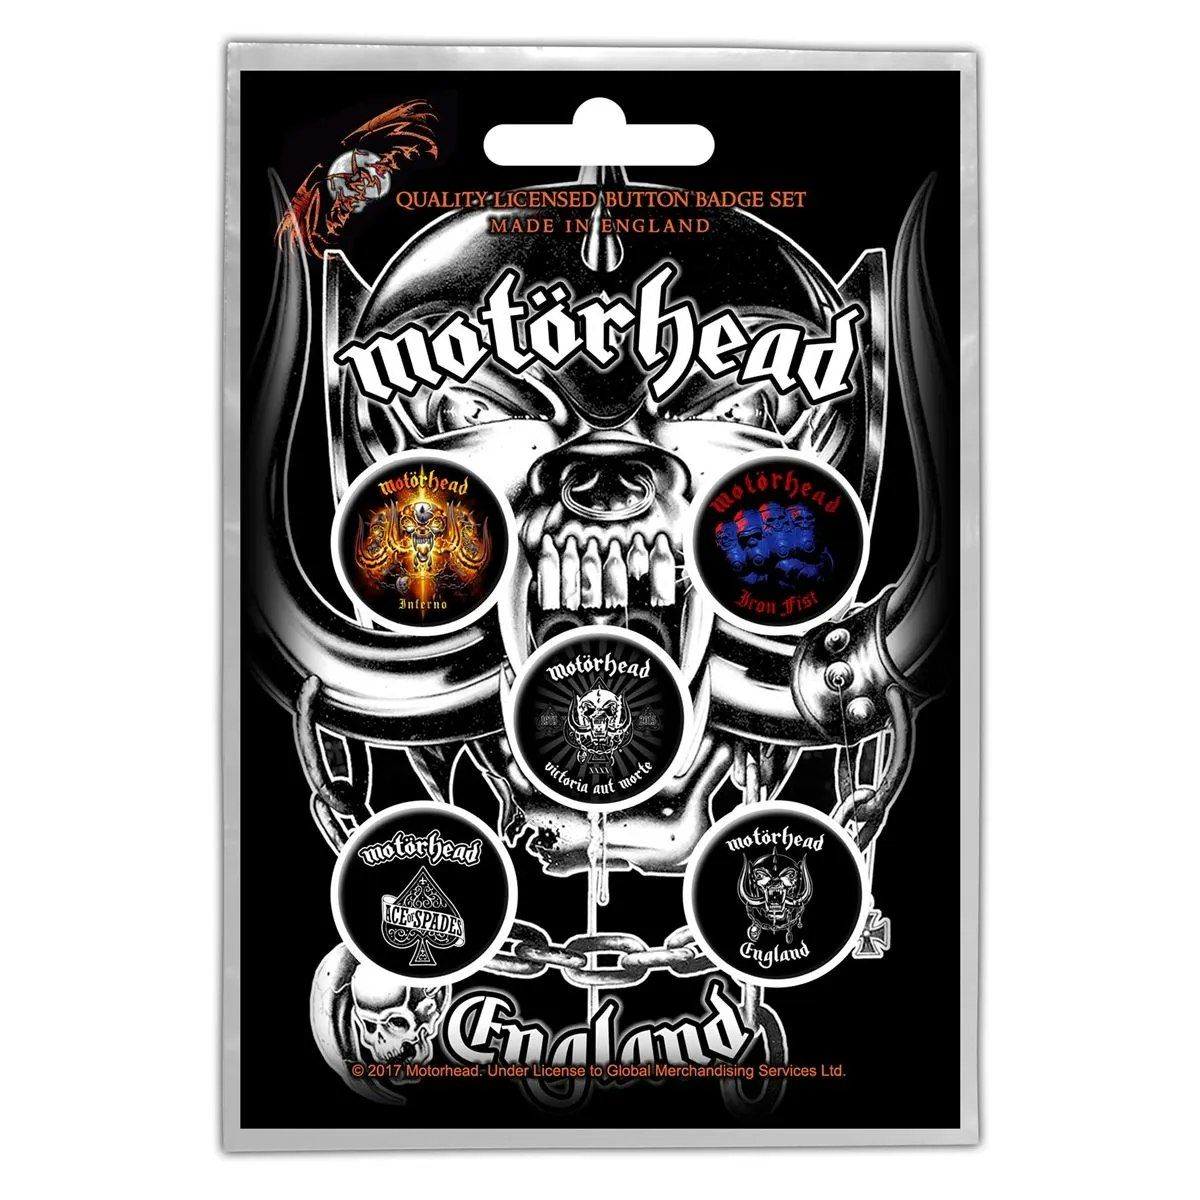 Motörhead 5-pack badge